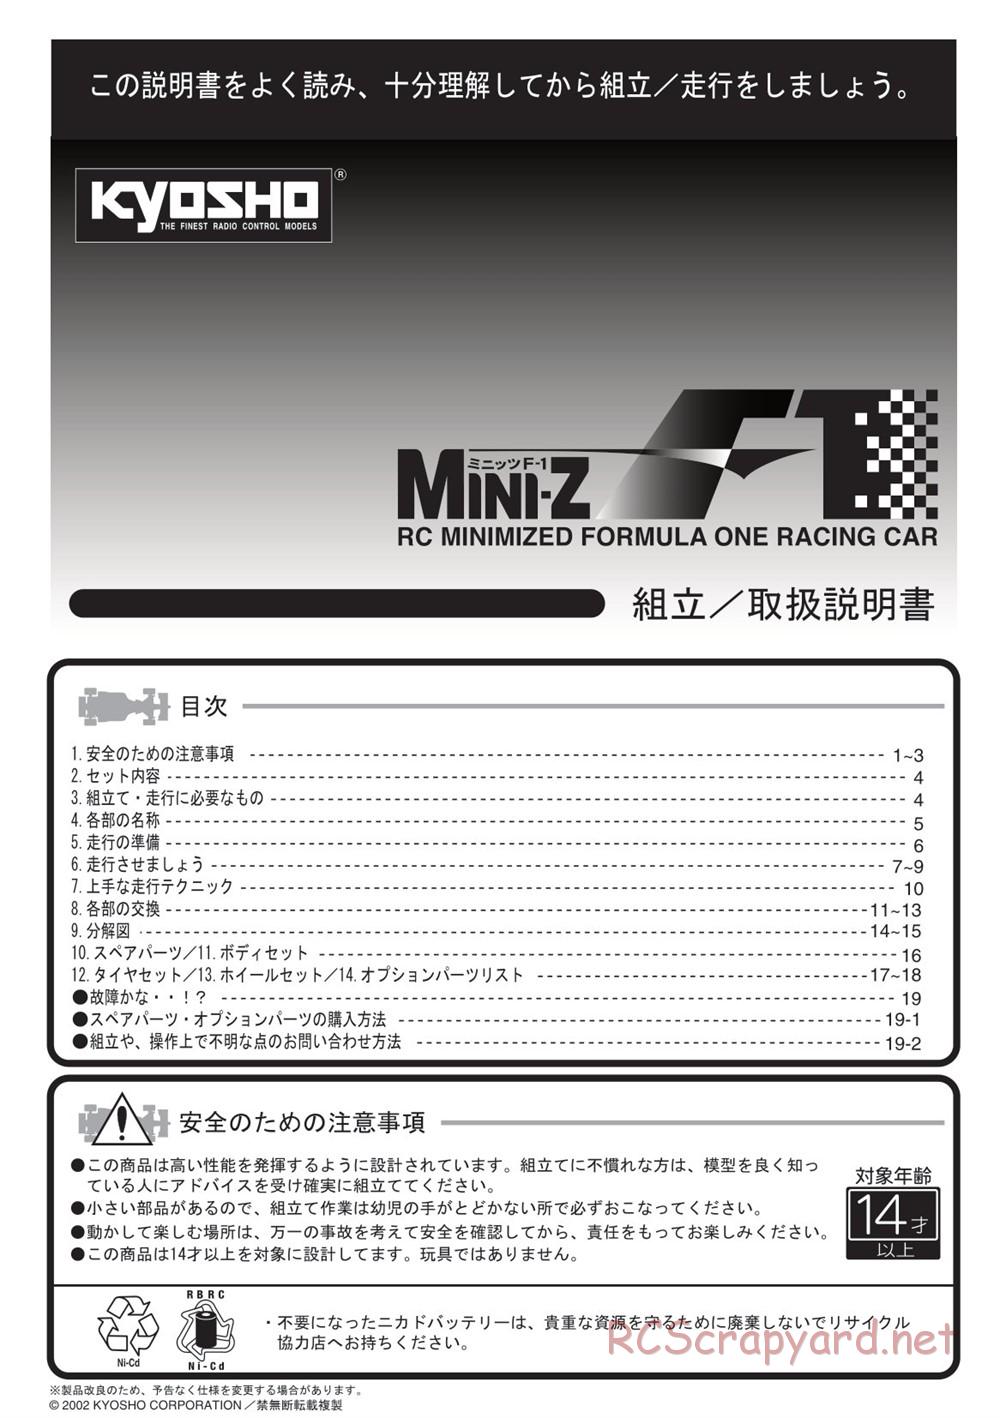 Kyosho - Mini-Z F1 - Manual - Page 1